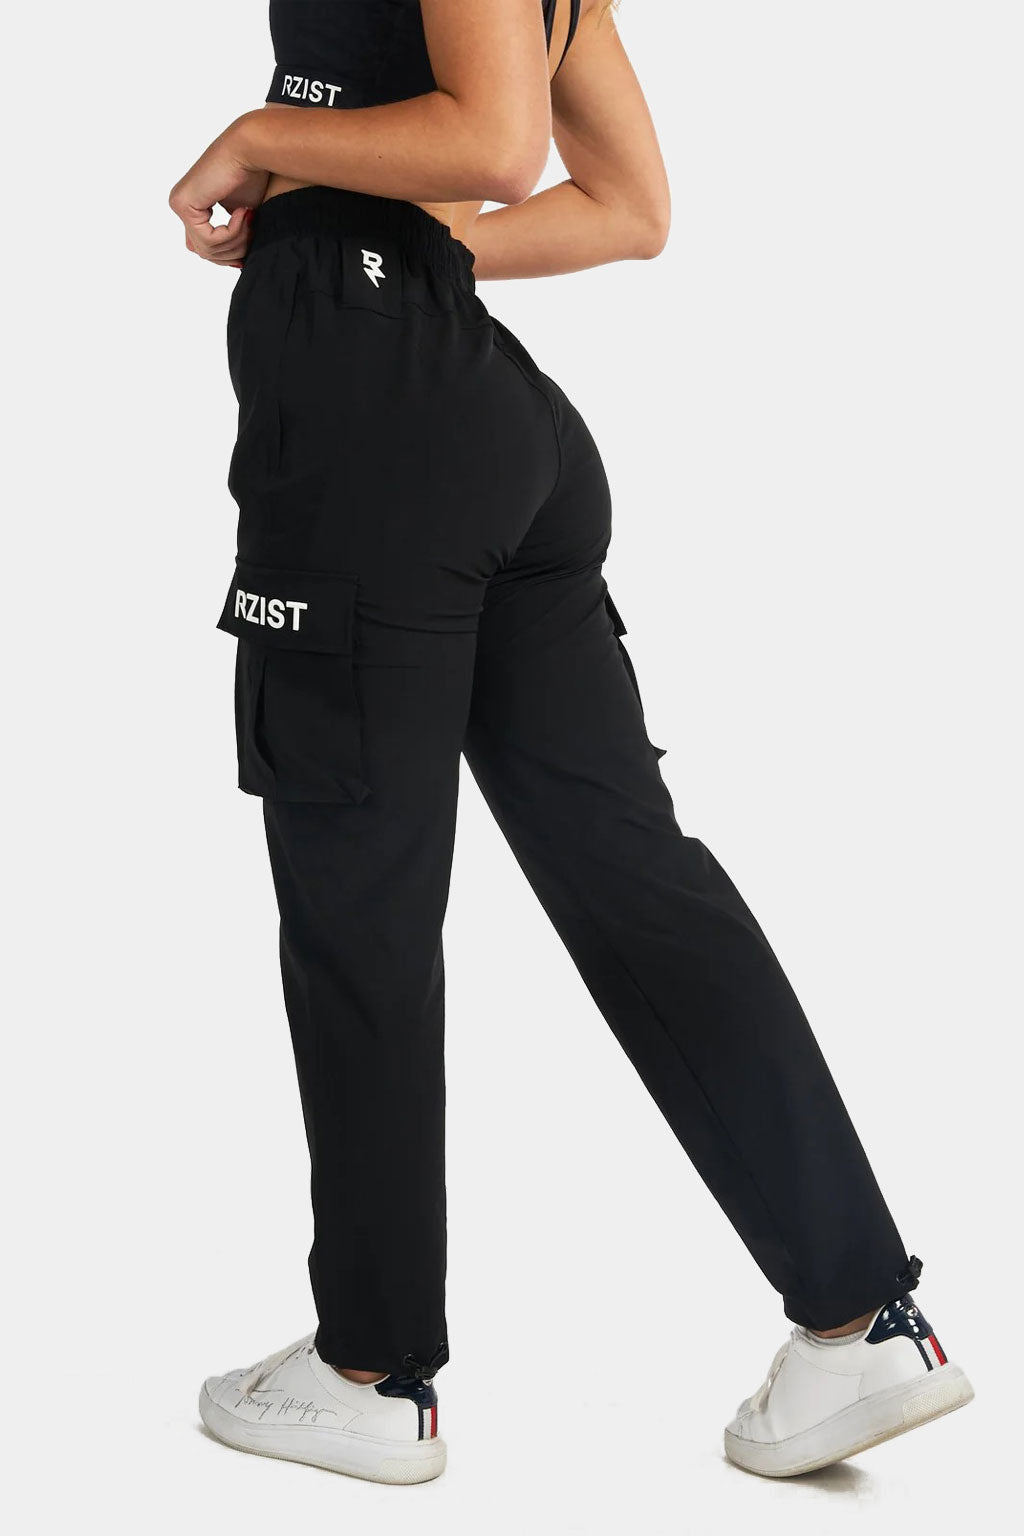 Rzist - Women's Active Cargo Pant